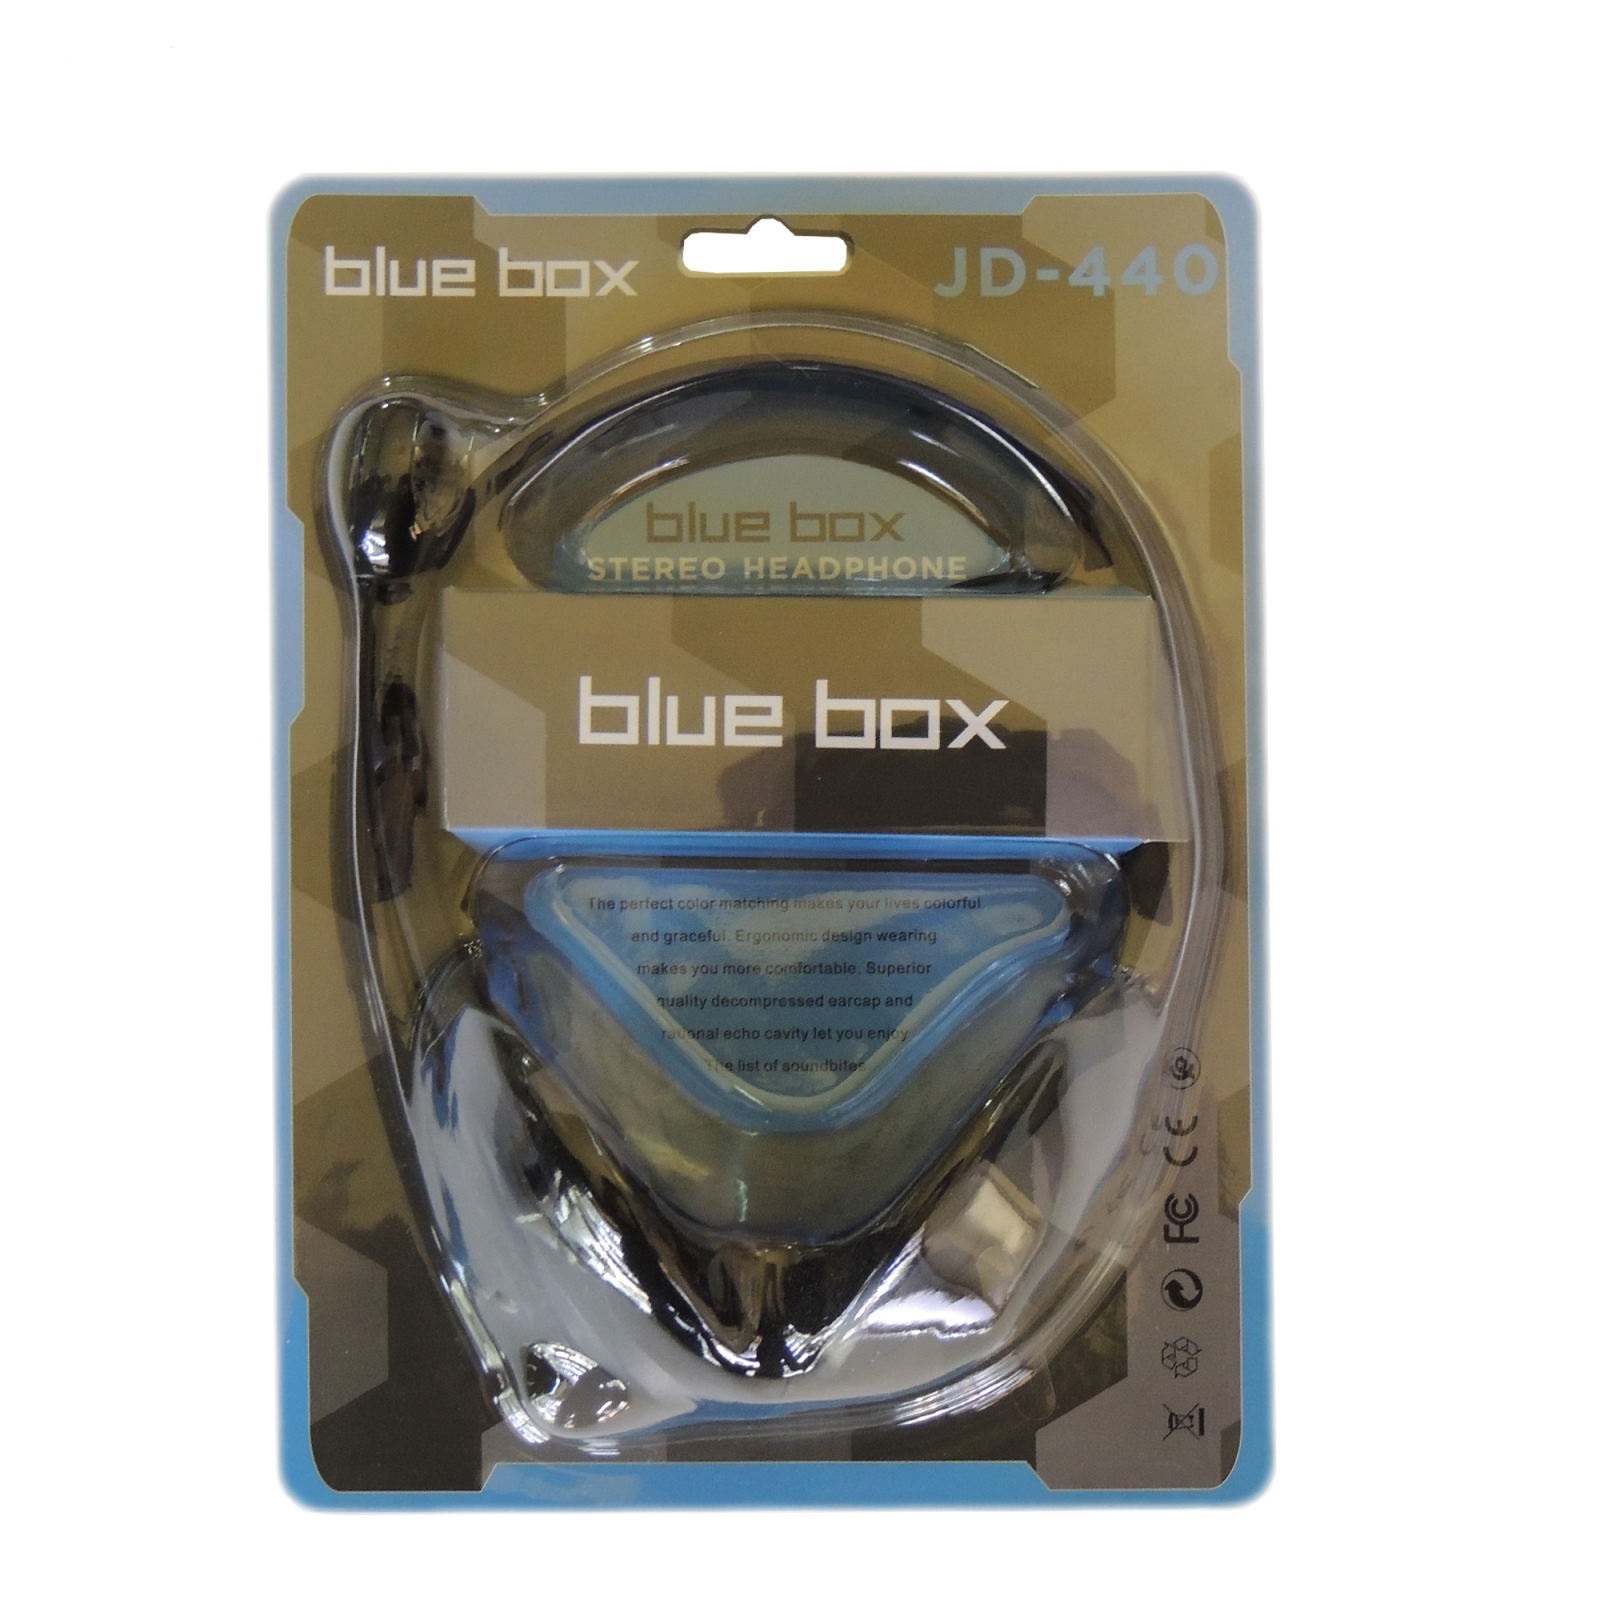 هدست بلو باکس مدل BLUE BOX JD 440